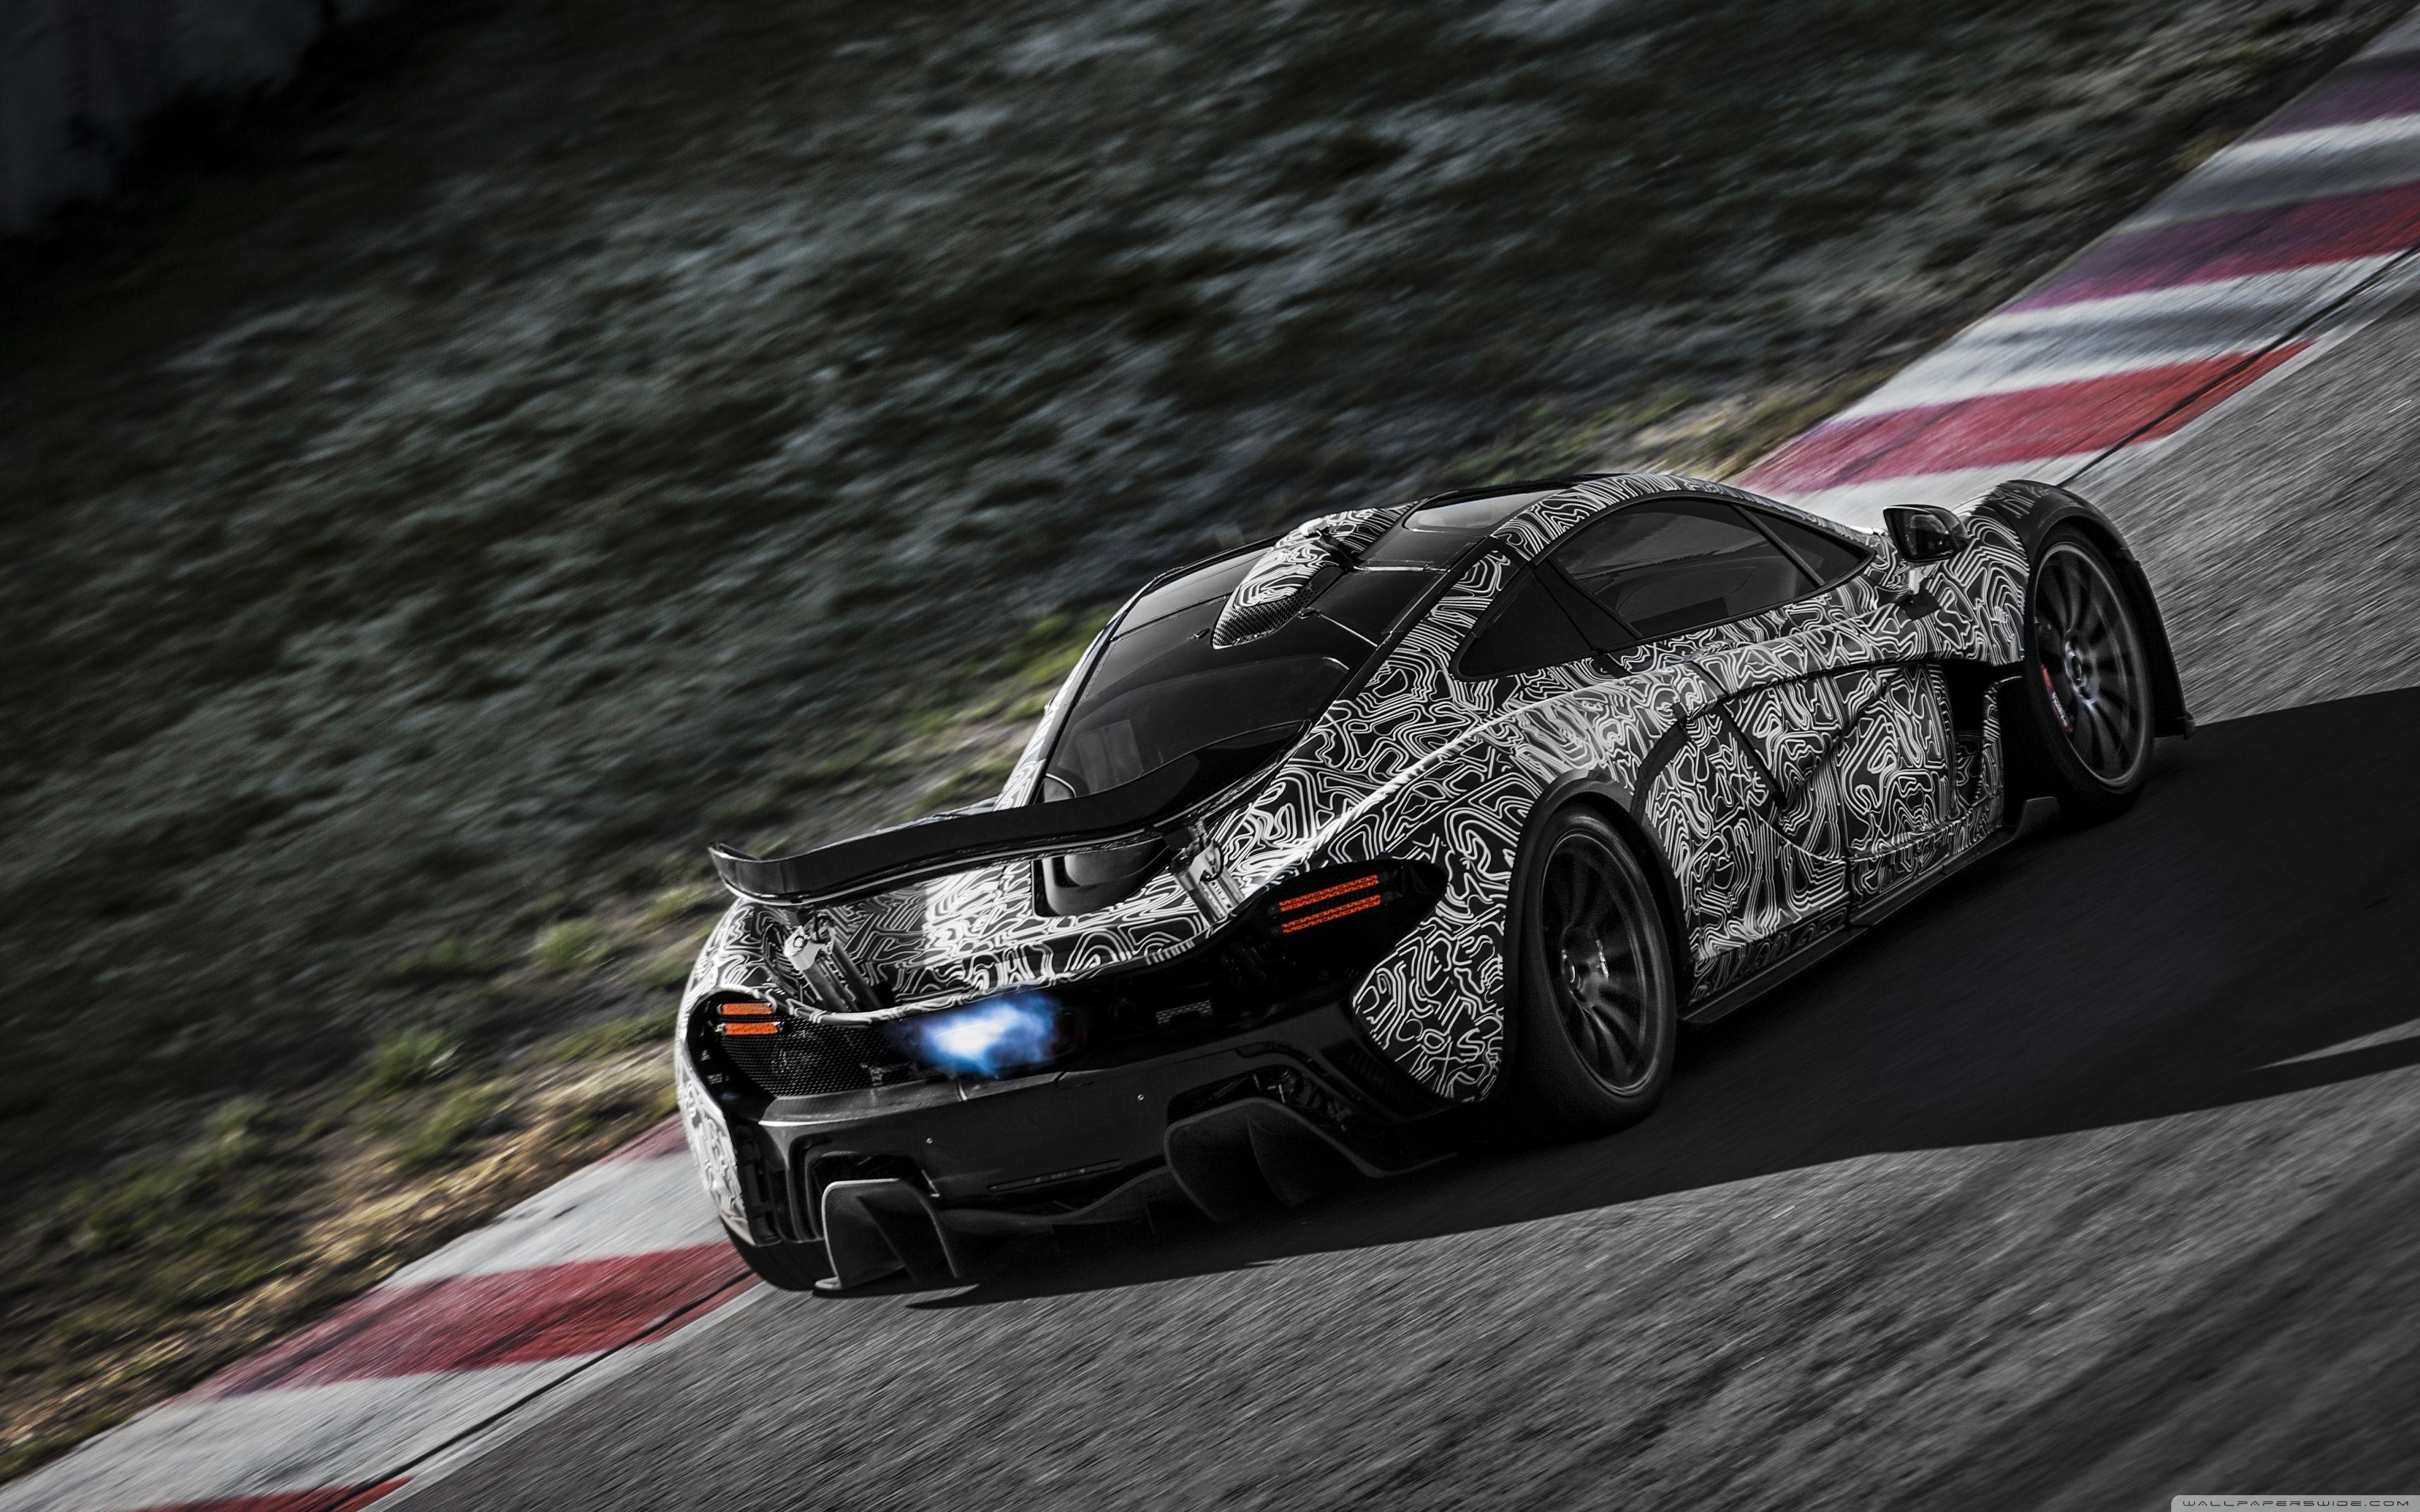 McLaren P1 Car Race HD desktop wallpaper, High Definition